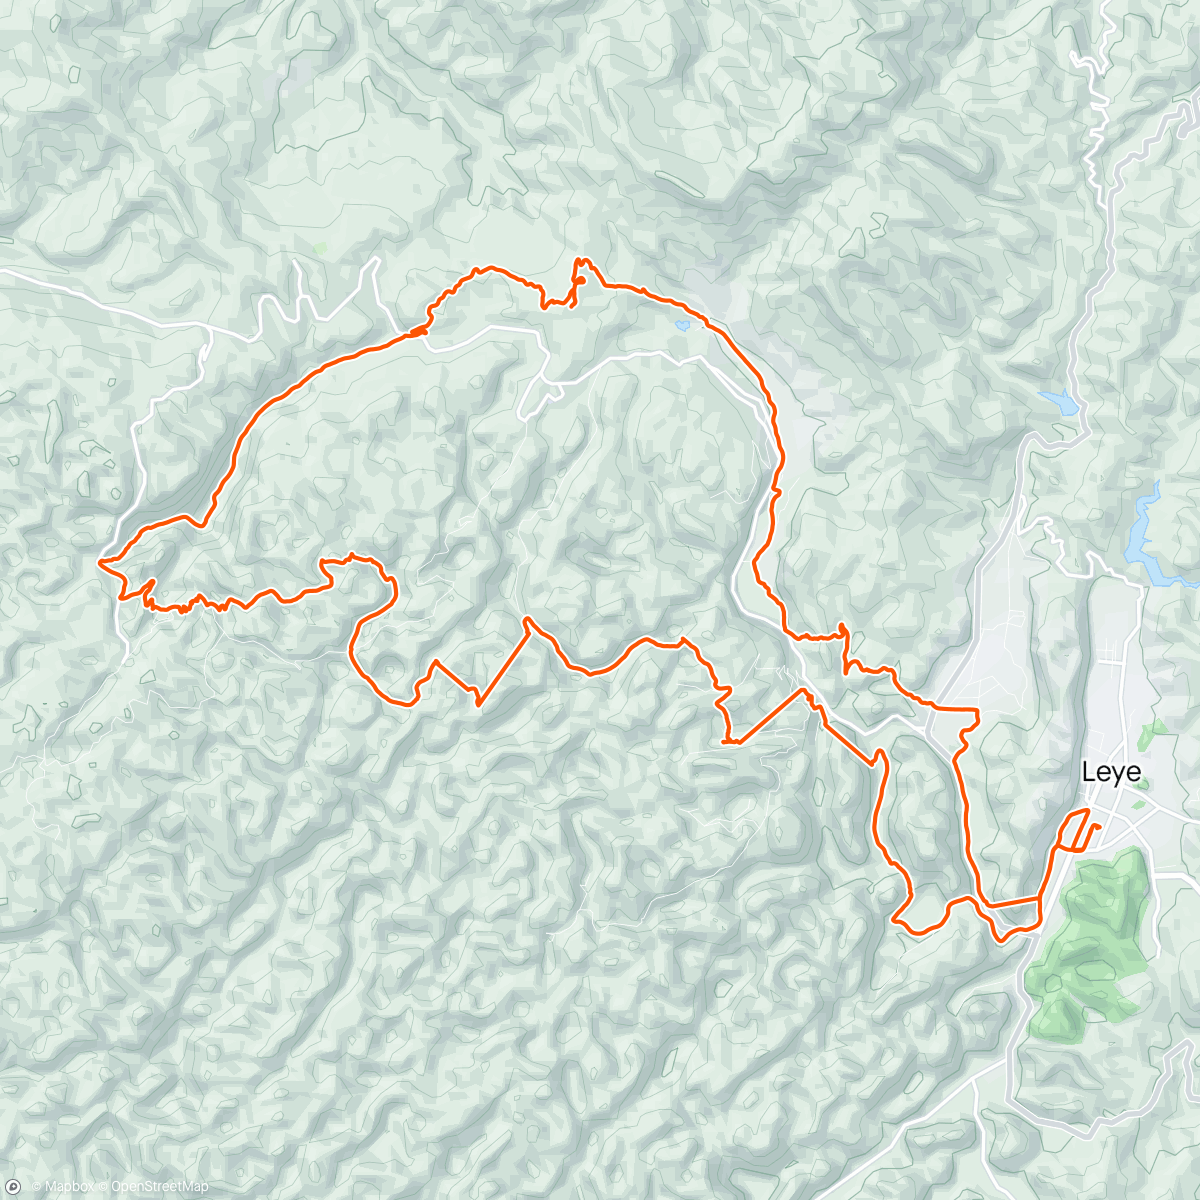 「Baise Leye cave trail run」活動的地圖